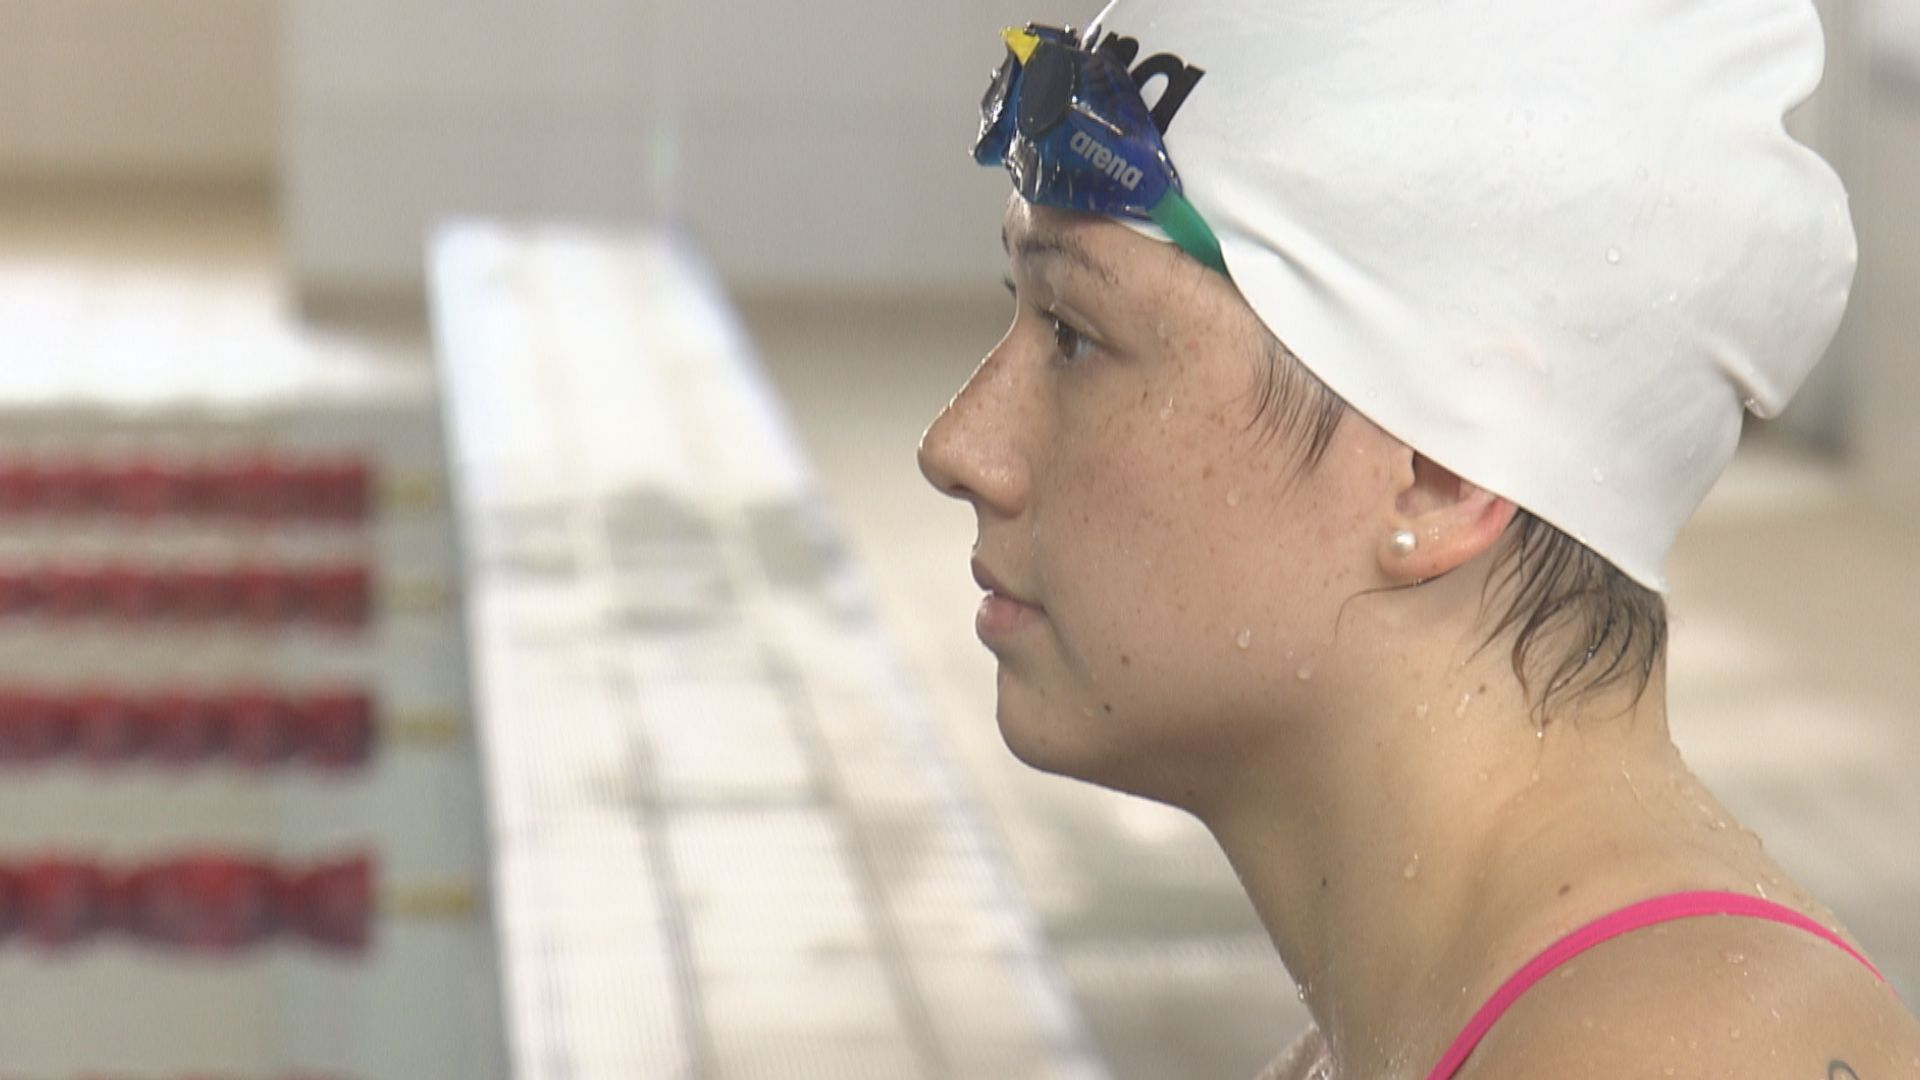 游泳世界盃匈牙利站 何詩蓓女子50米自由泳破港績摘銀